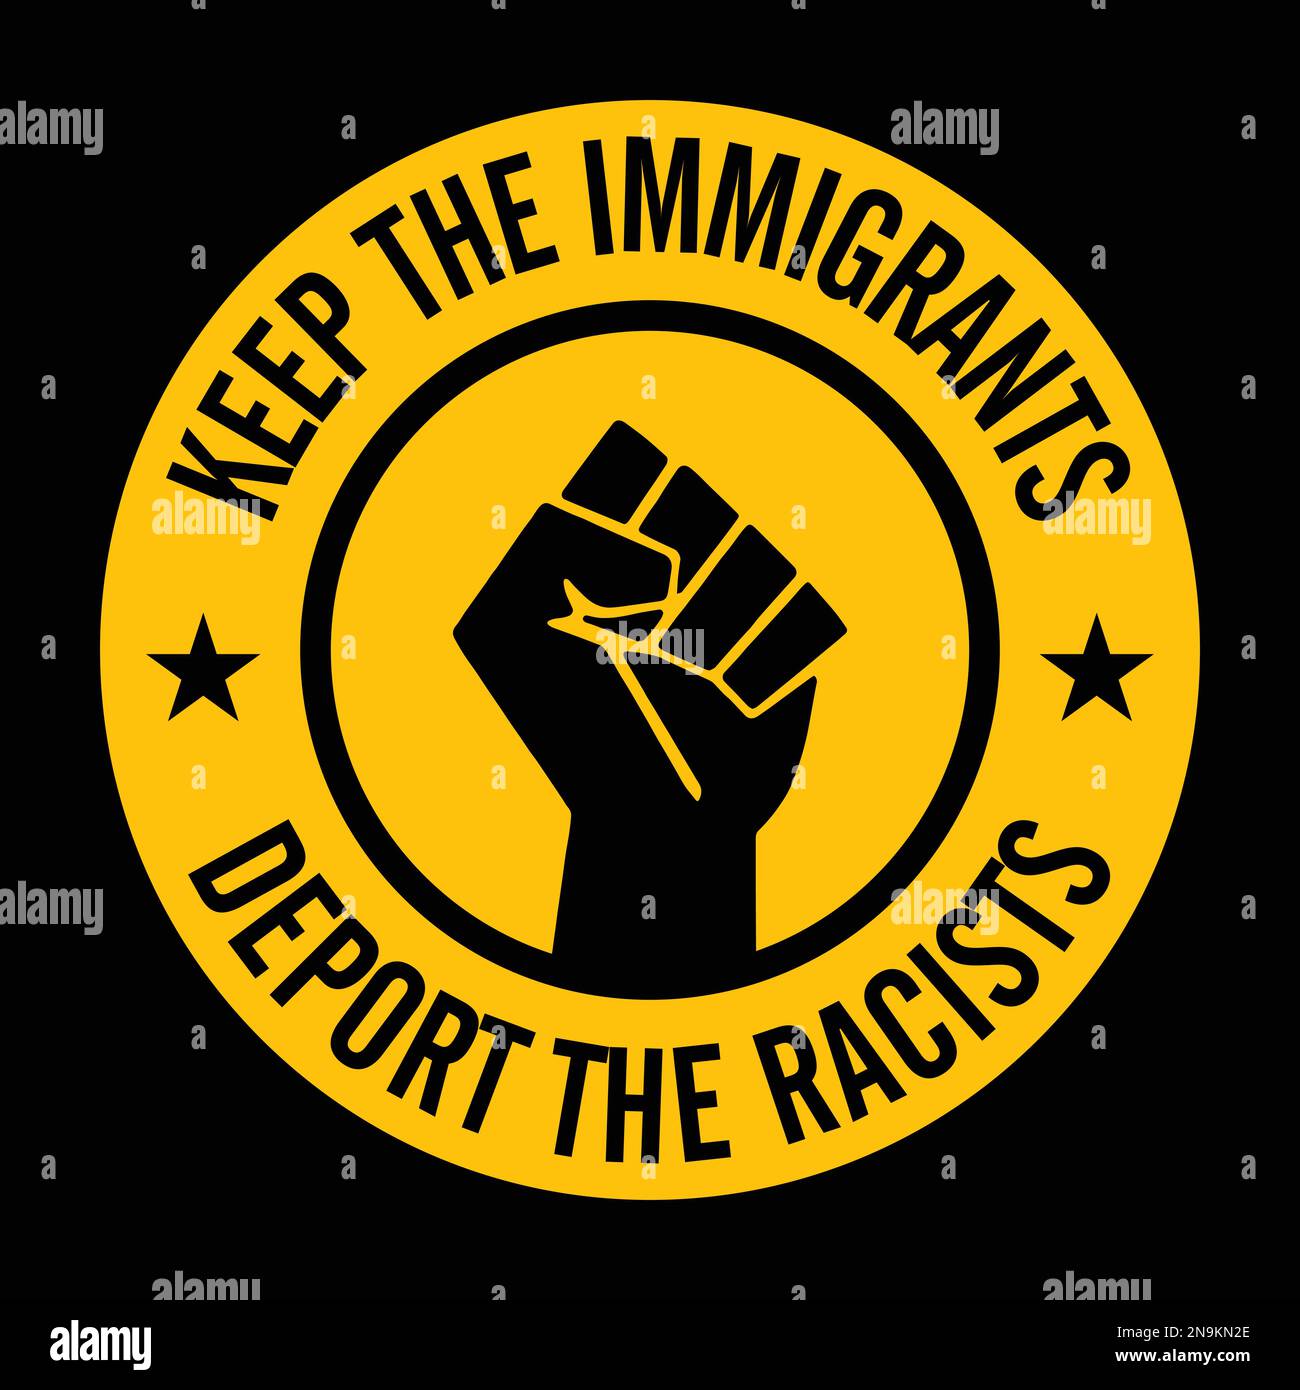 Tenere gli immigrati deportare i razzisti. Illustrazione Vettoriale